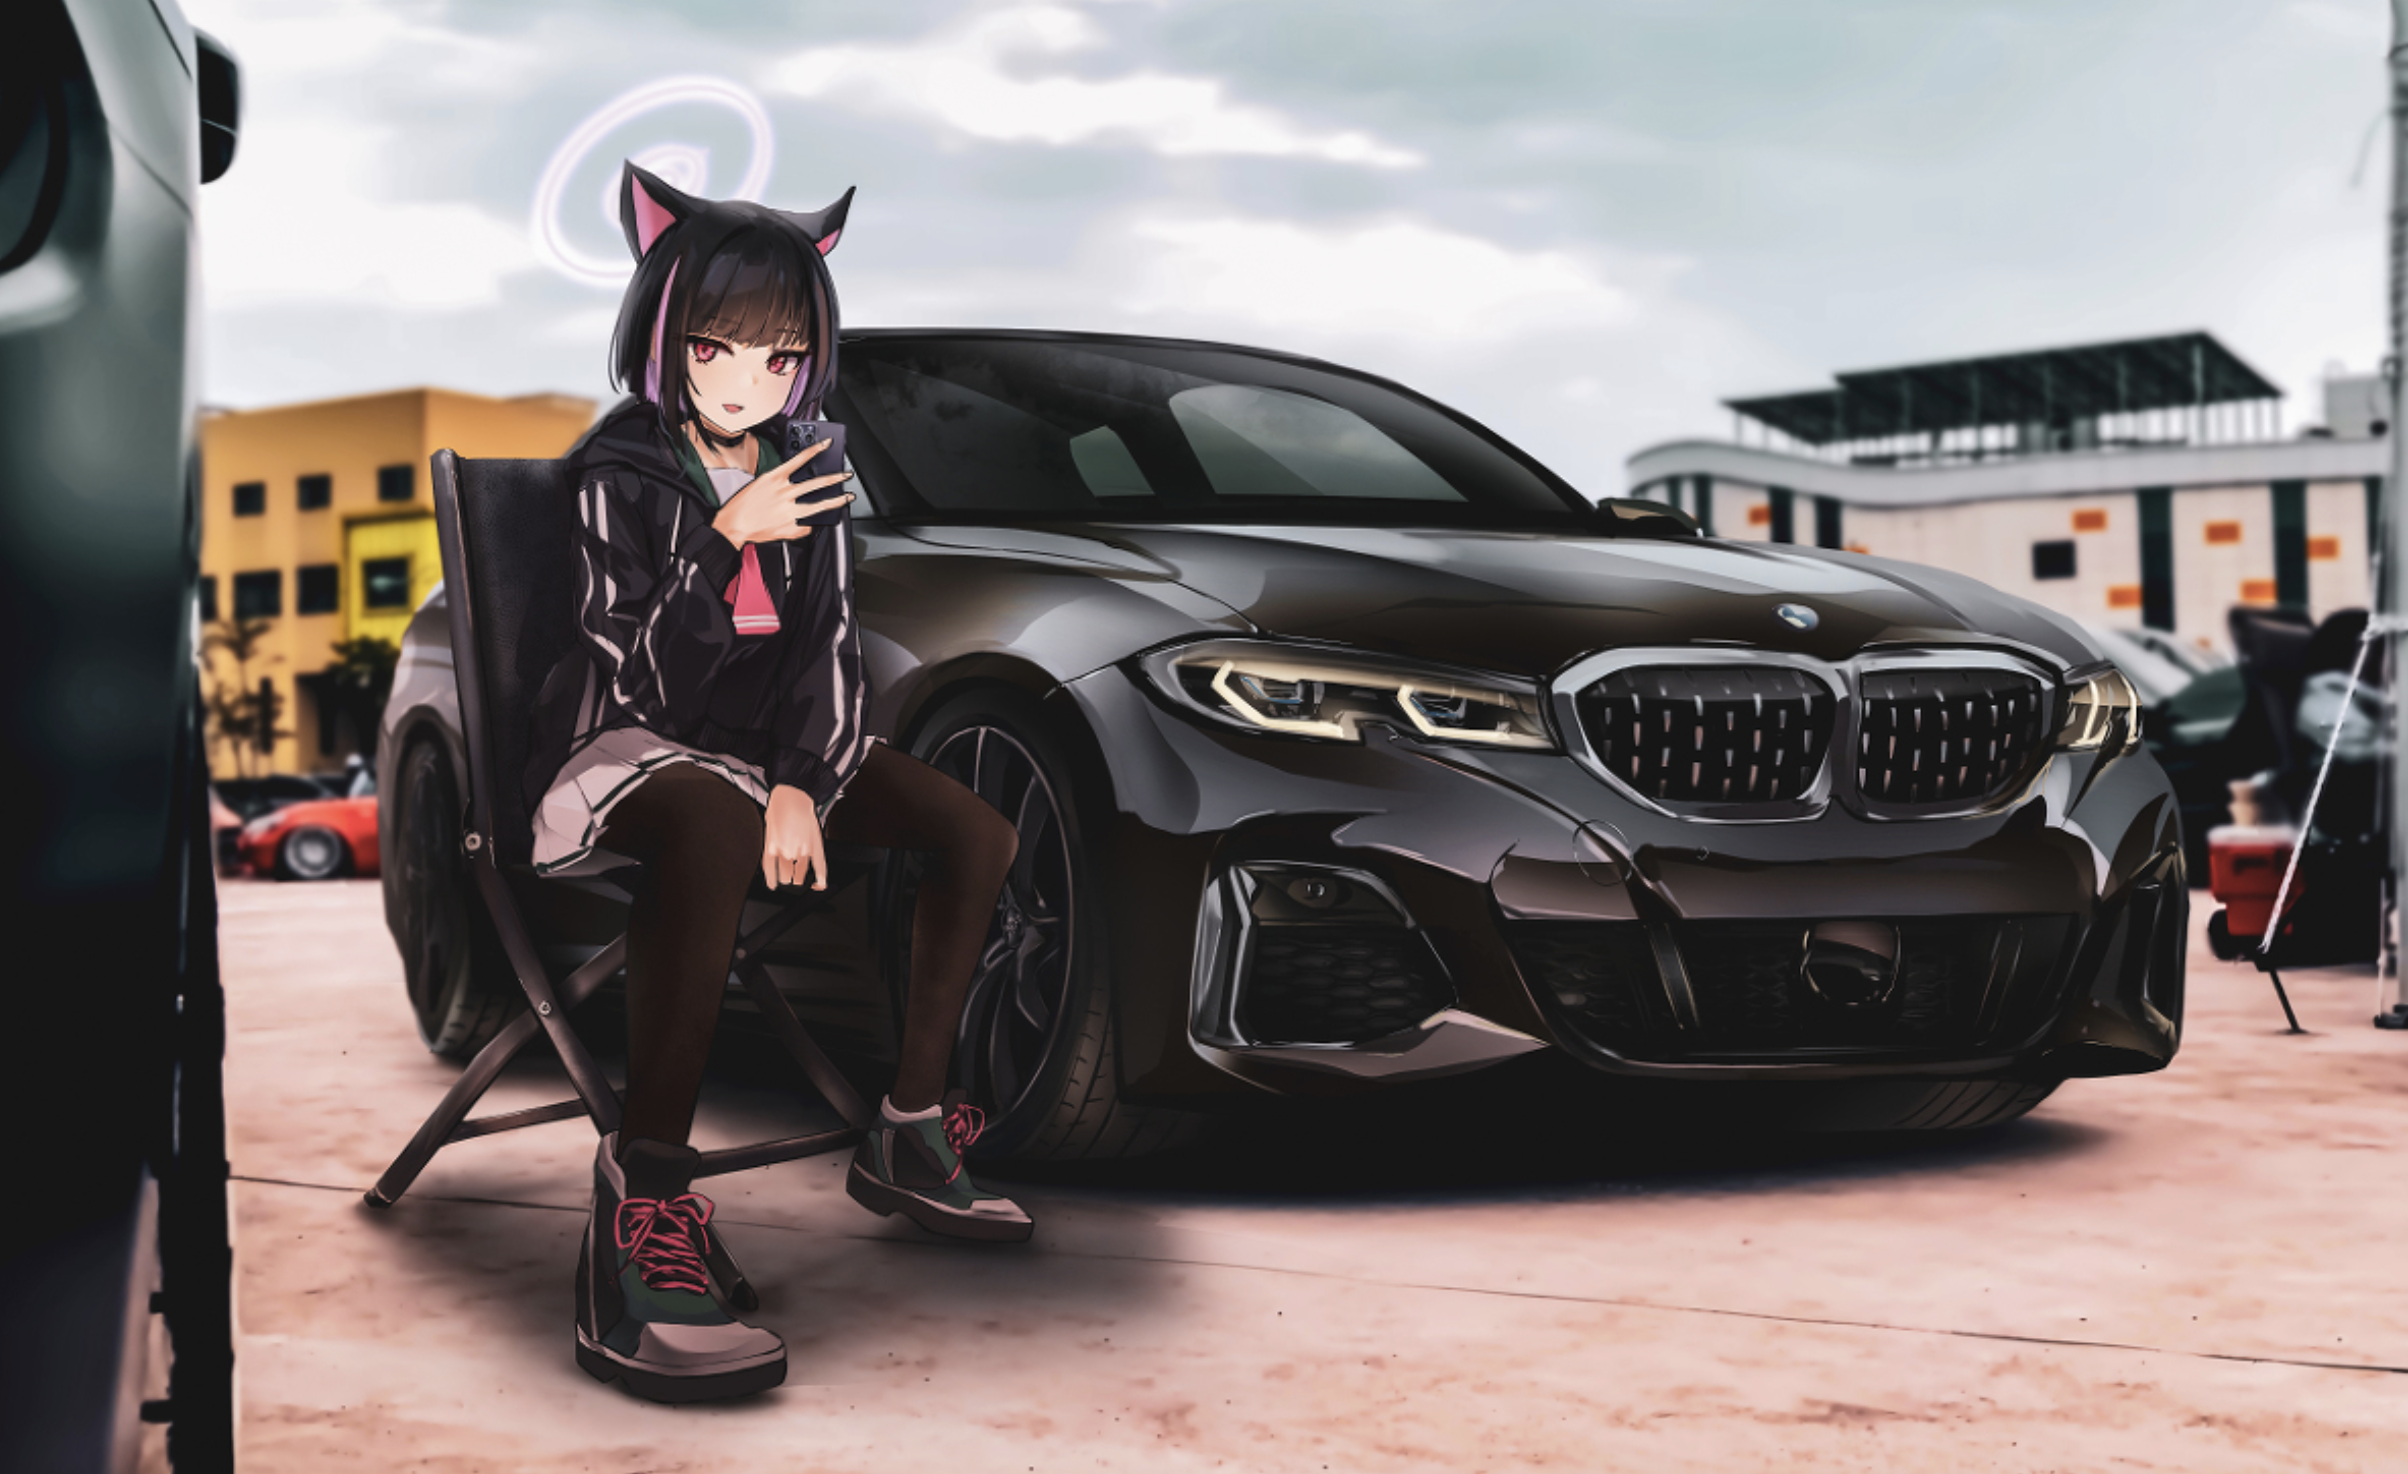 Anime 2408x1474 illustration artwork Blue Archive Kyouyama Kazusa vehicle BMW BMW M340i anime girls halo